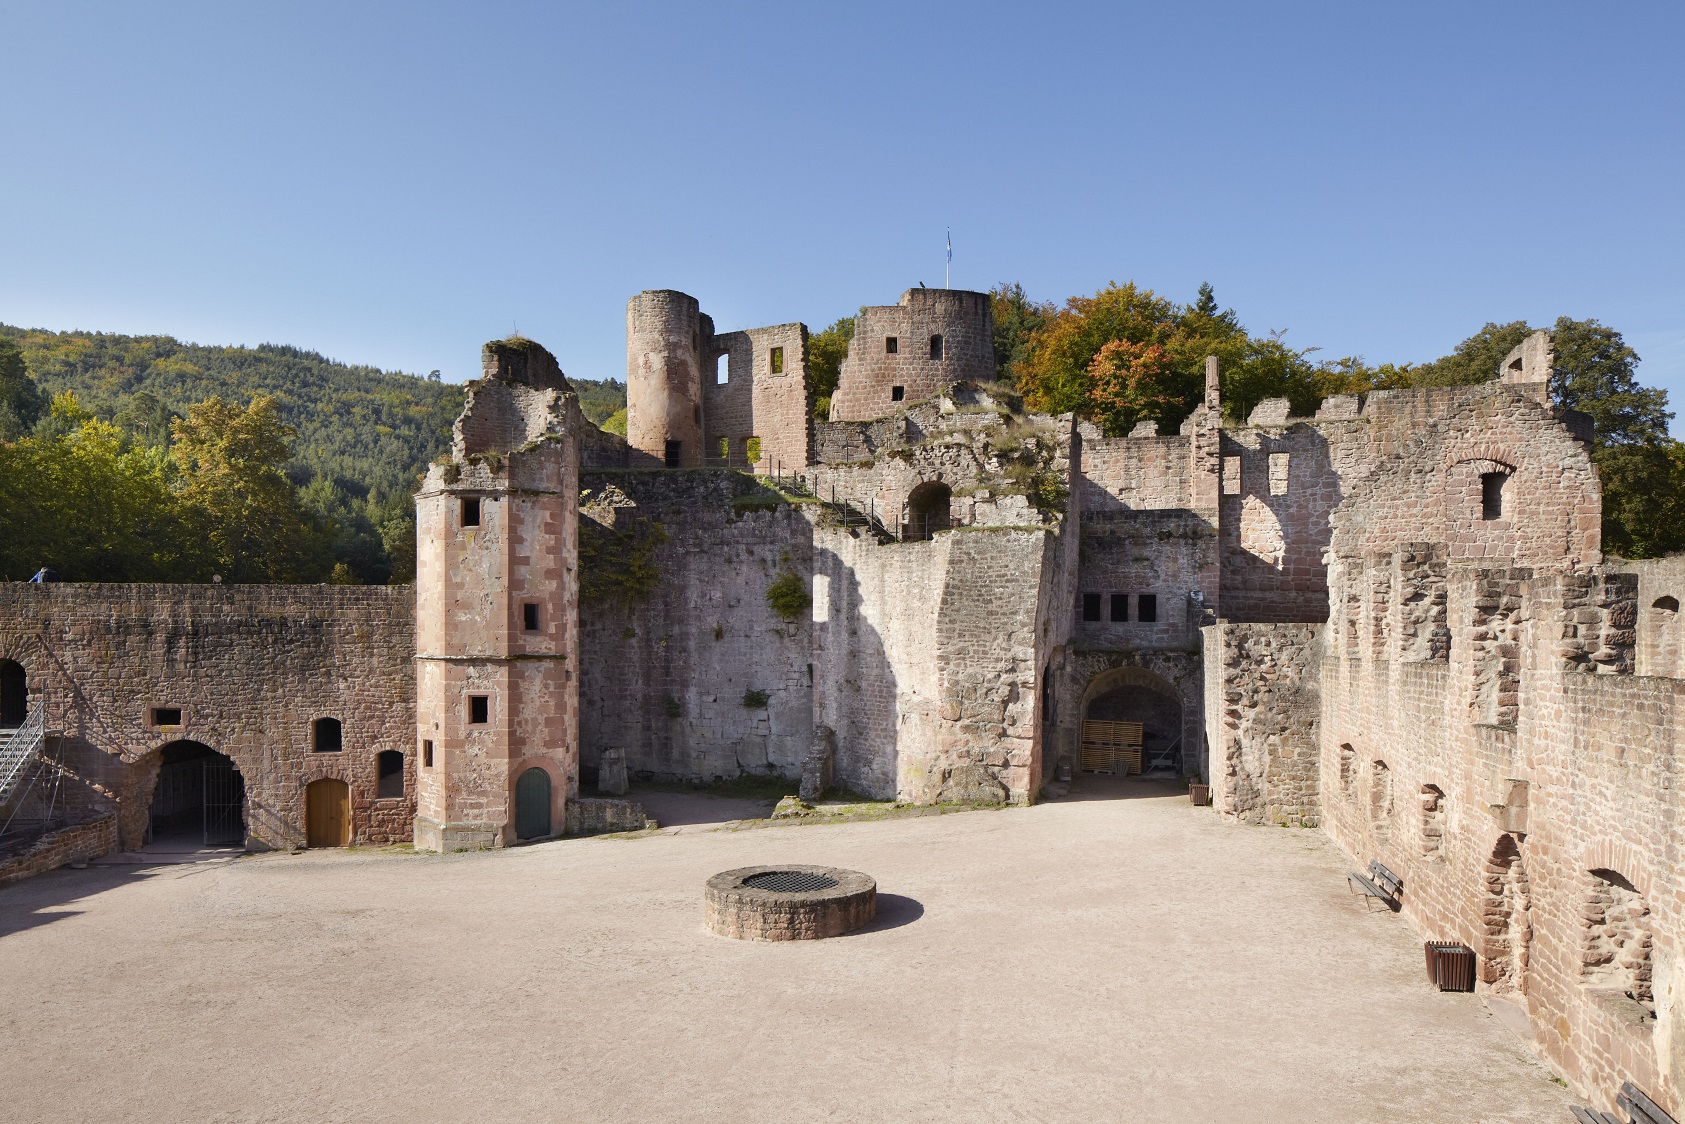 Mauer- und Turmruinen einer Burg mit großen Platz in der Mitte